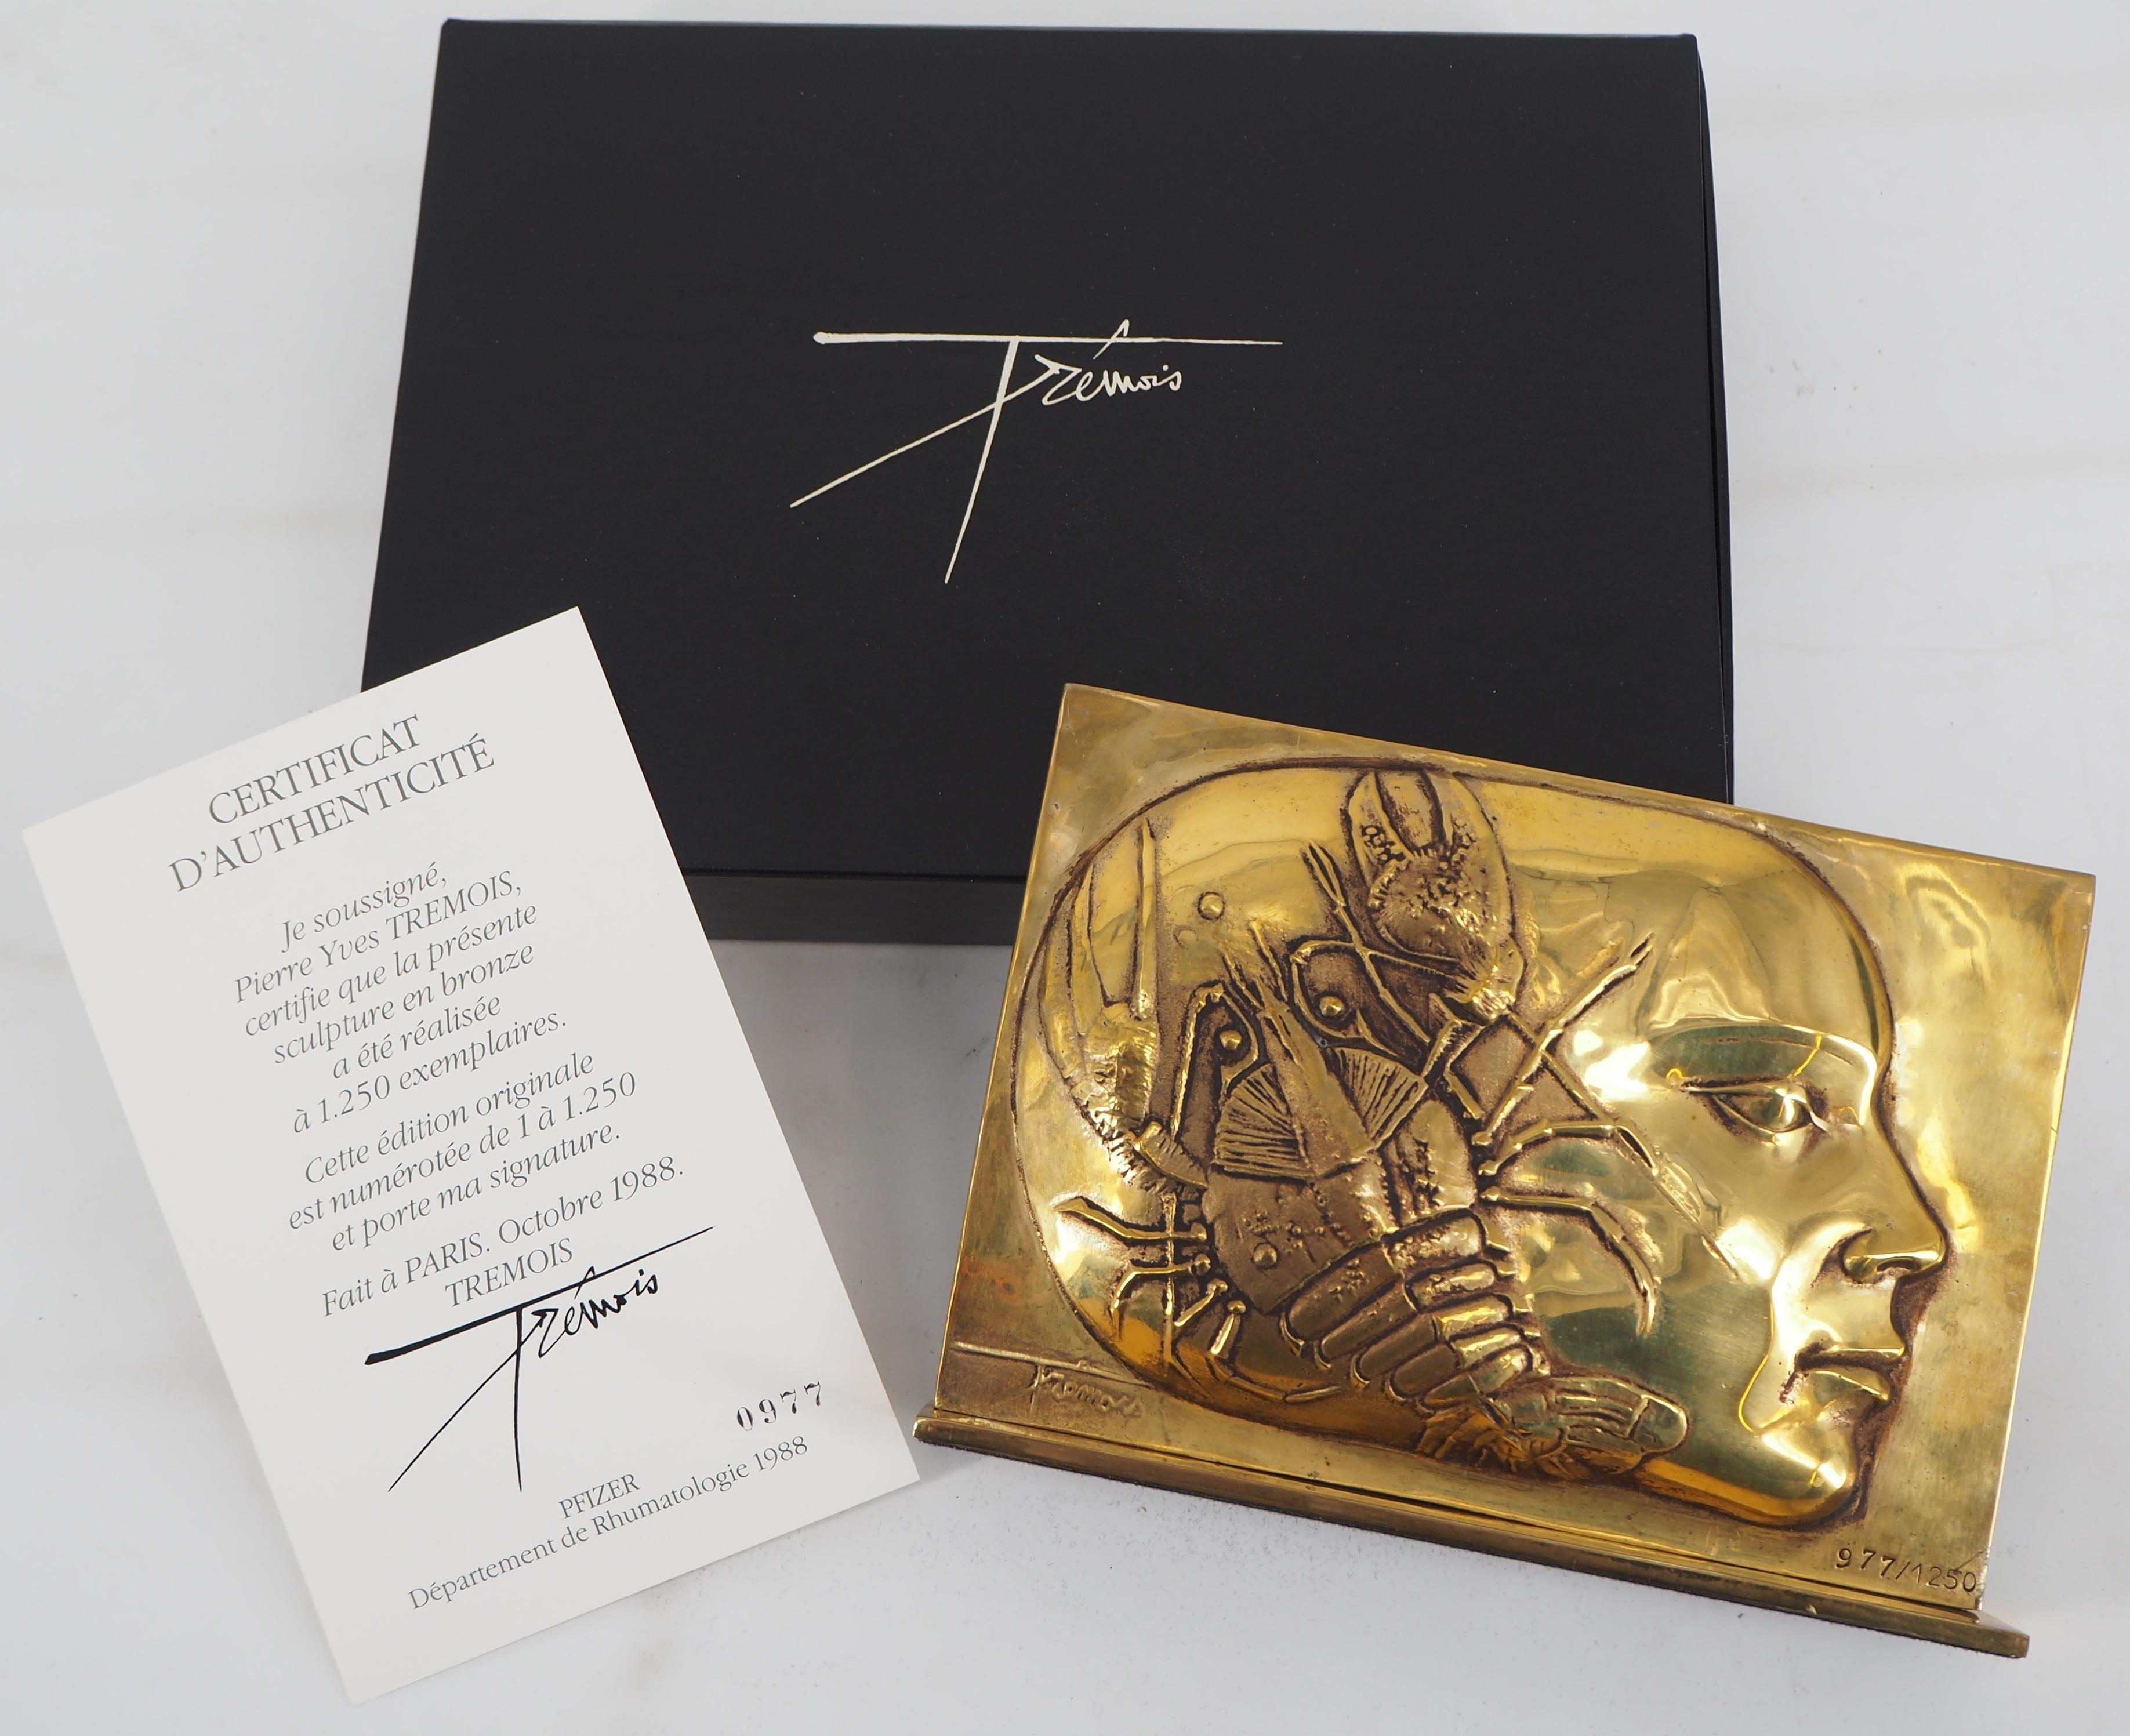 Woman with Lobster - Original signed golden bronze sculpture, 1988 - Modern Sculpture by Pierre-Yves Trémois